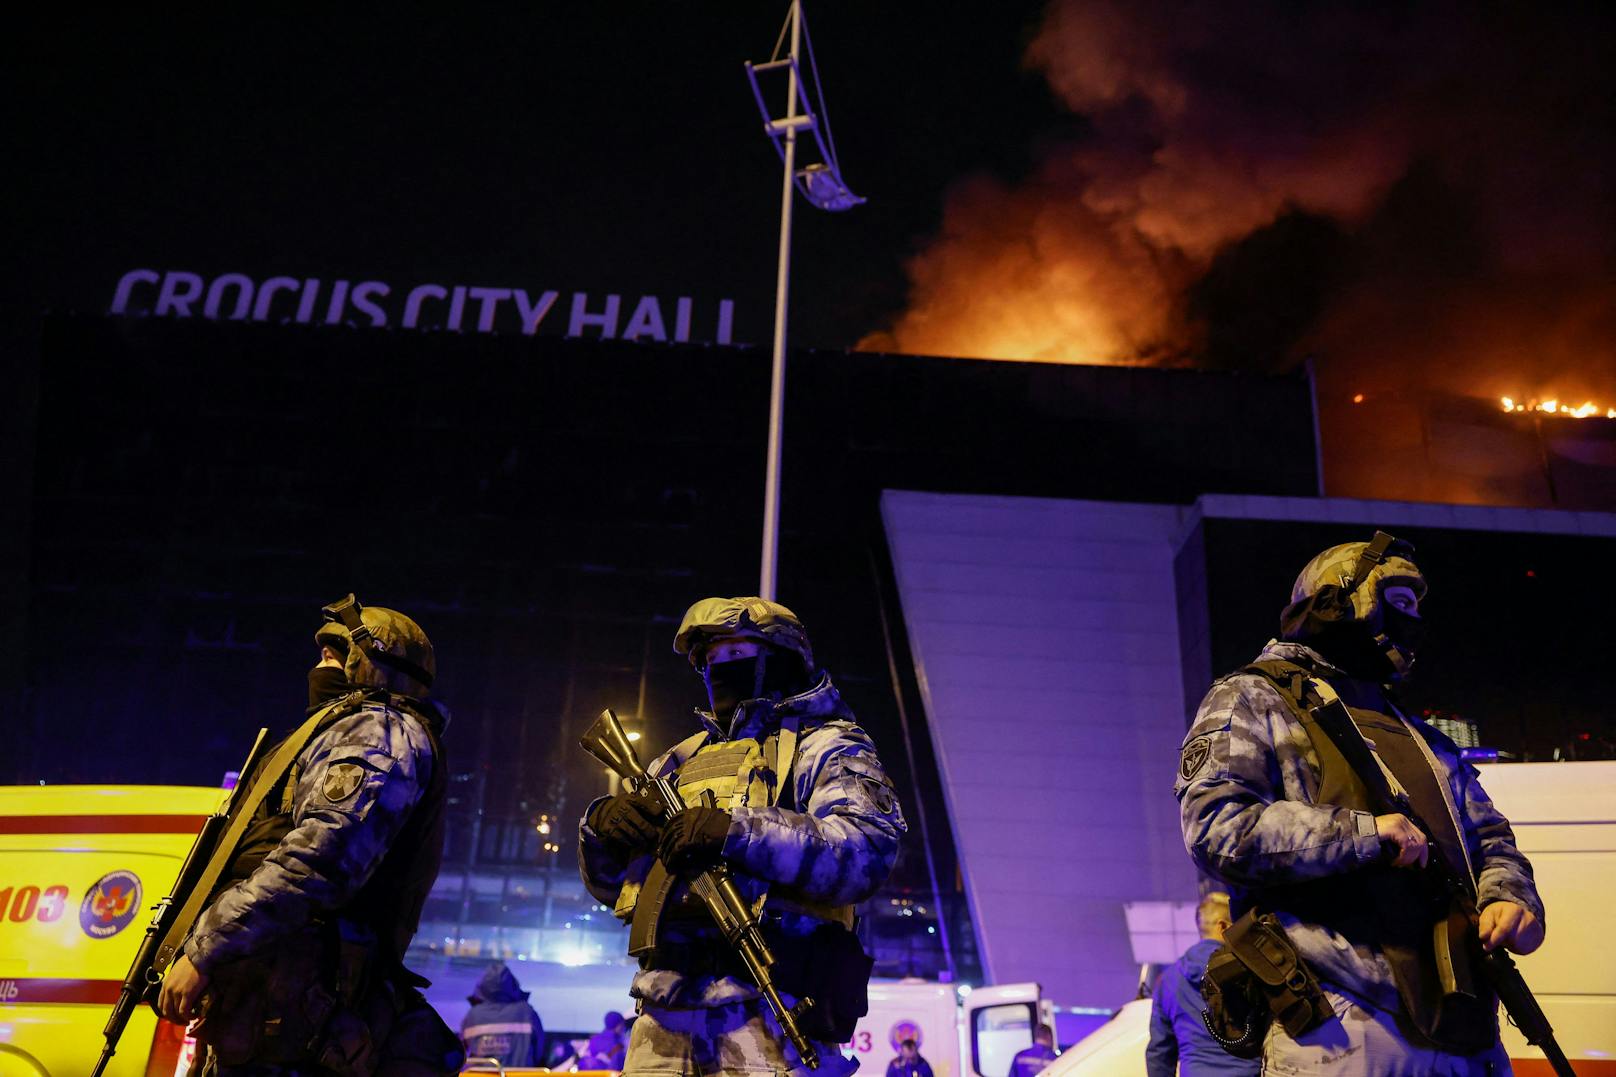 Der Kreml sprach am Abend von einem "Terroristischen Attentat". 